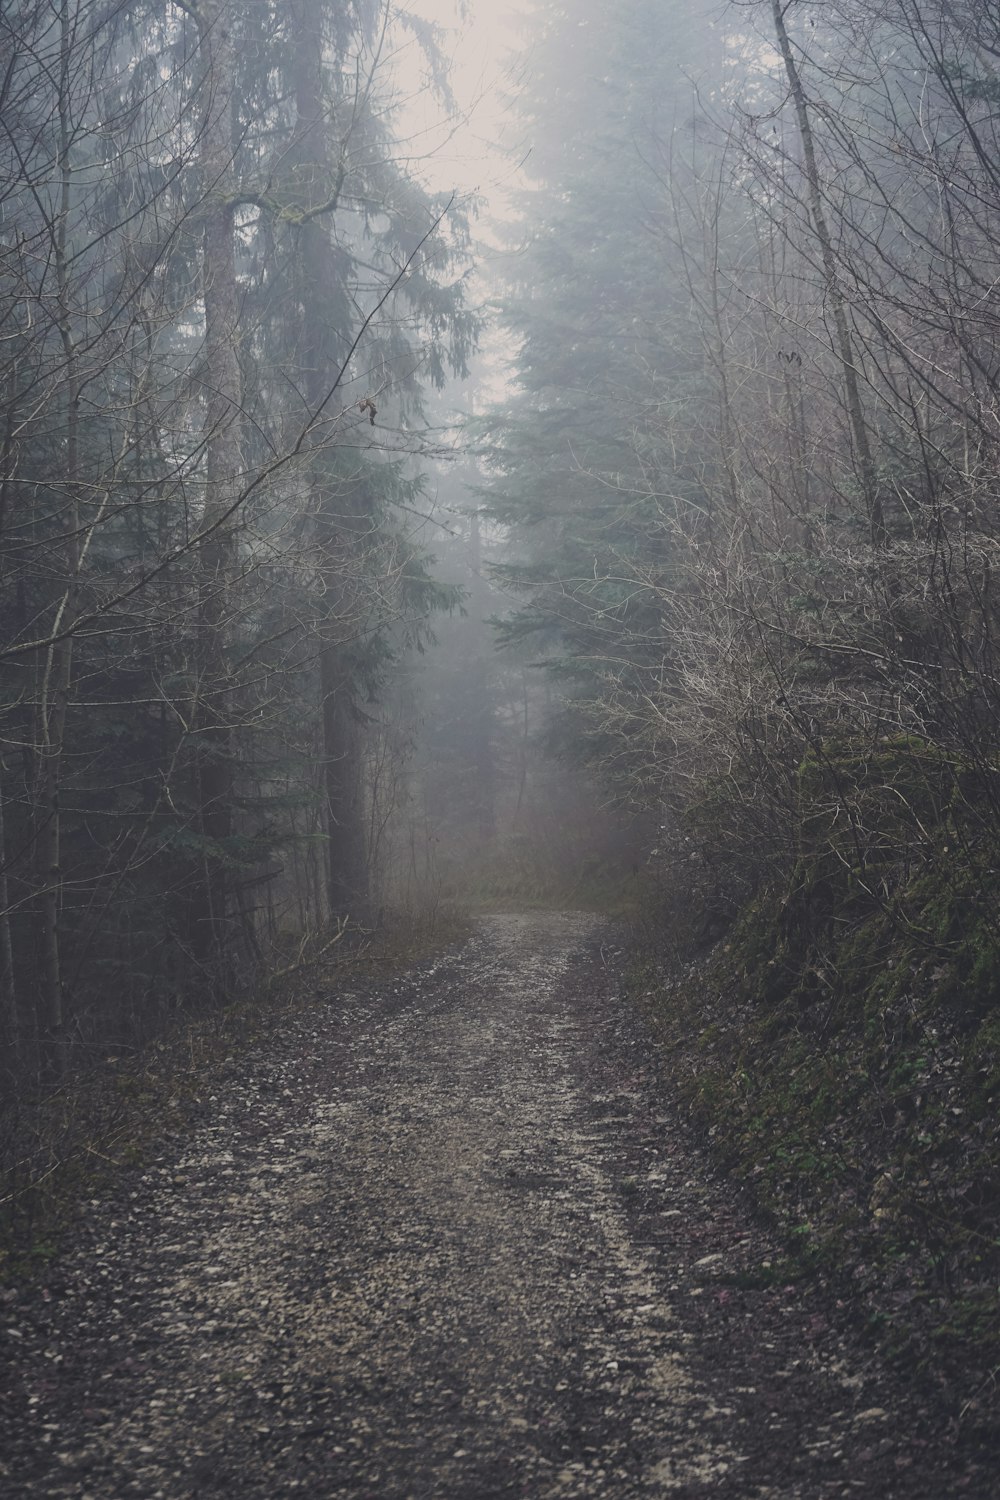 brouillard gris recouvrant un sentier de terre au milieu des bois